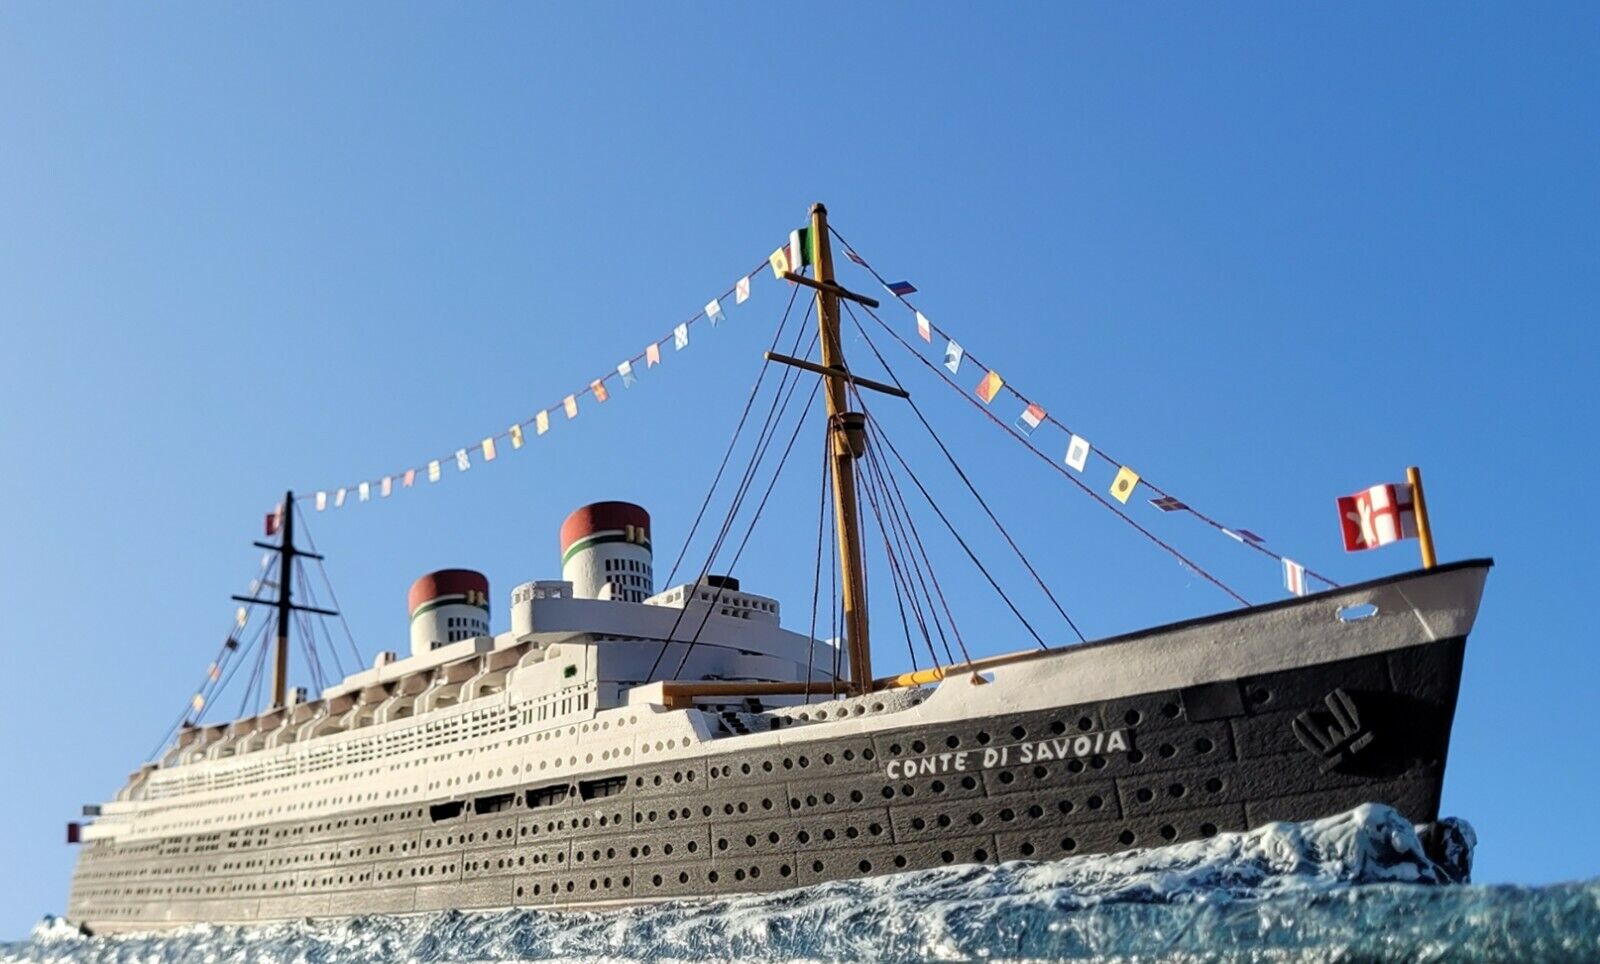 SS Conte Di Savoia Ocean Liner Model Cruise Ship 1:350 Scale Italian Line